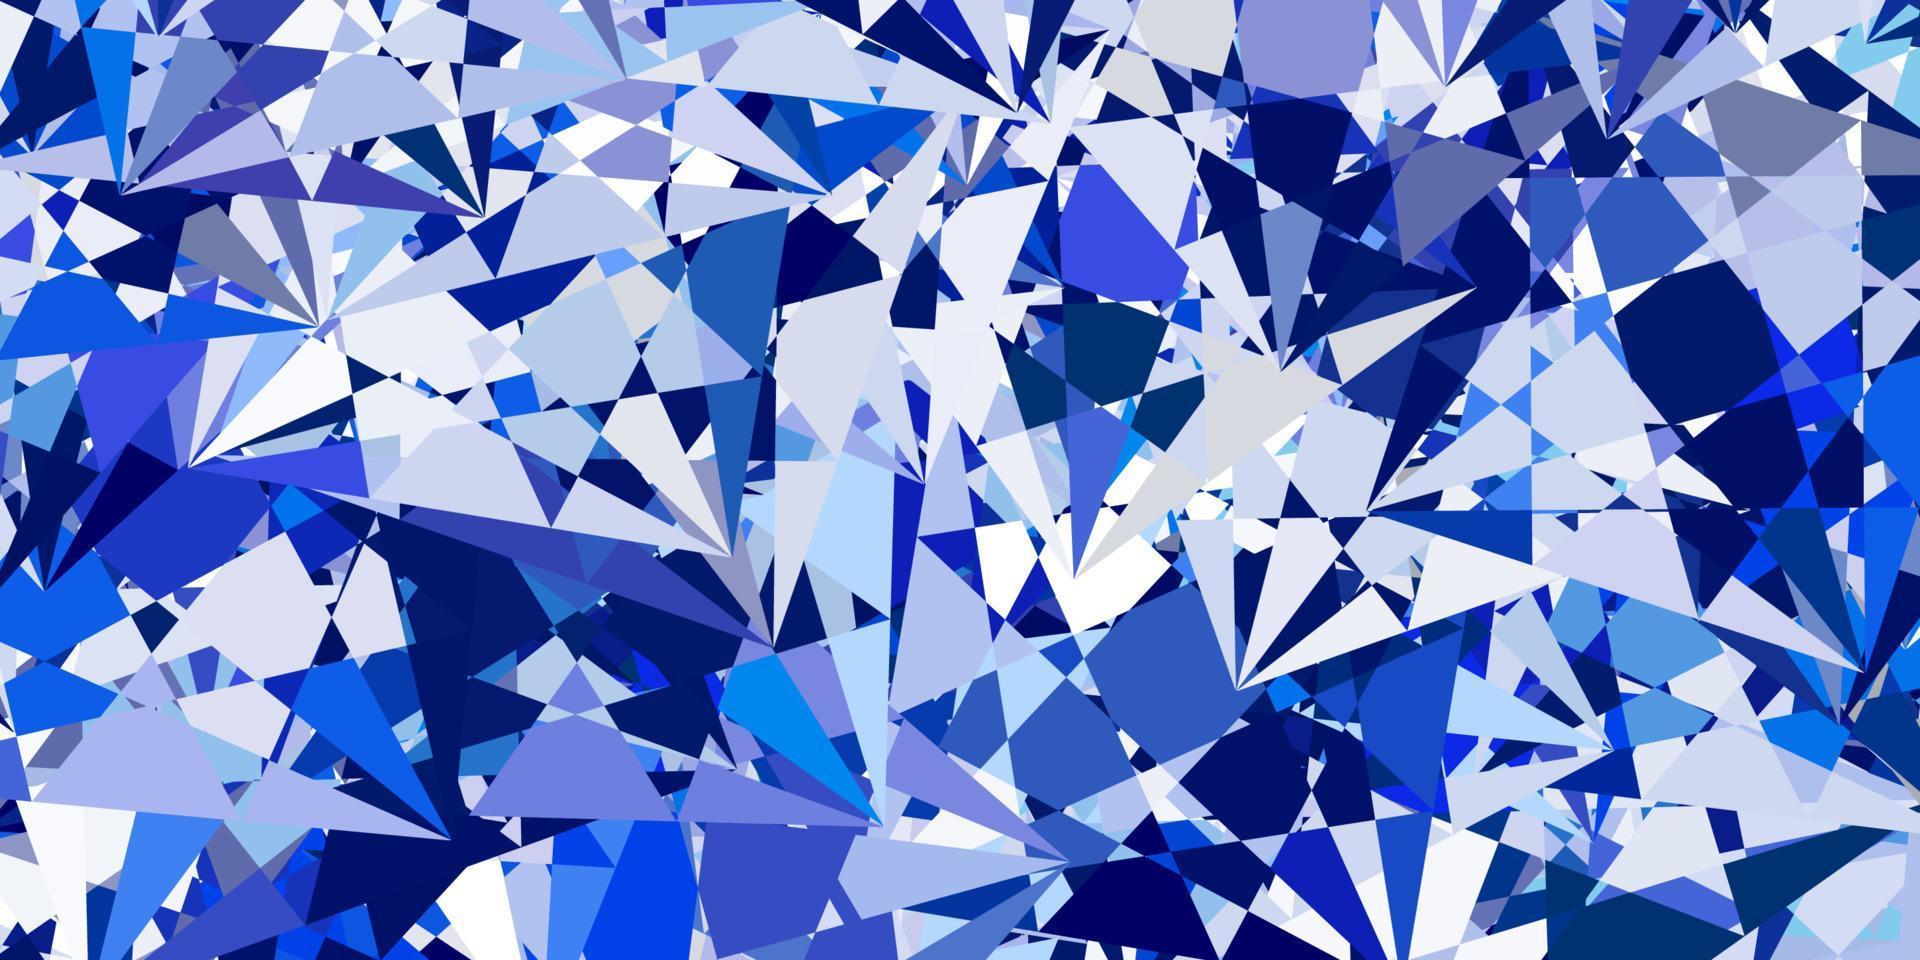 mise en page de vecteur rose clair, bleu avec des formes triangulaires.